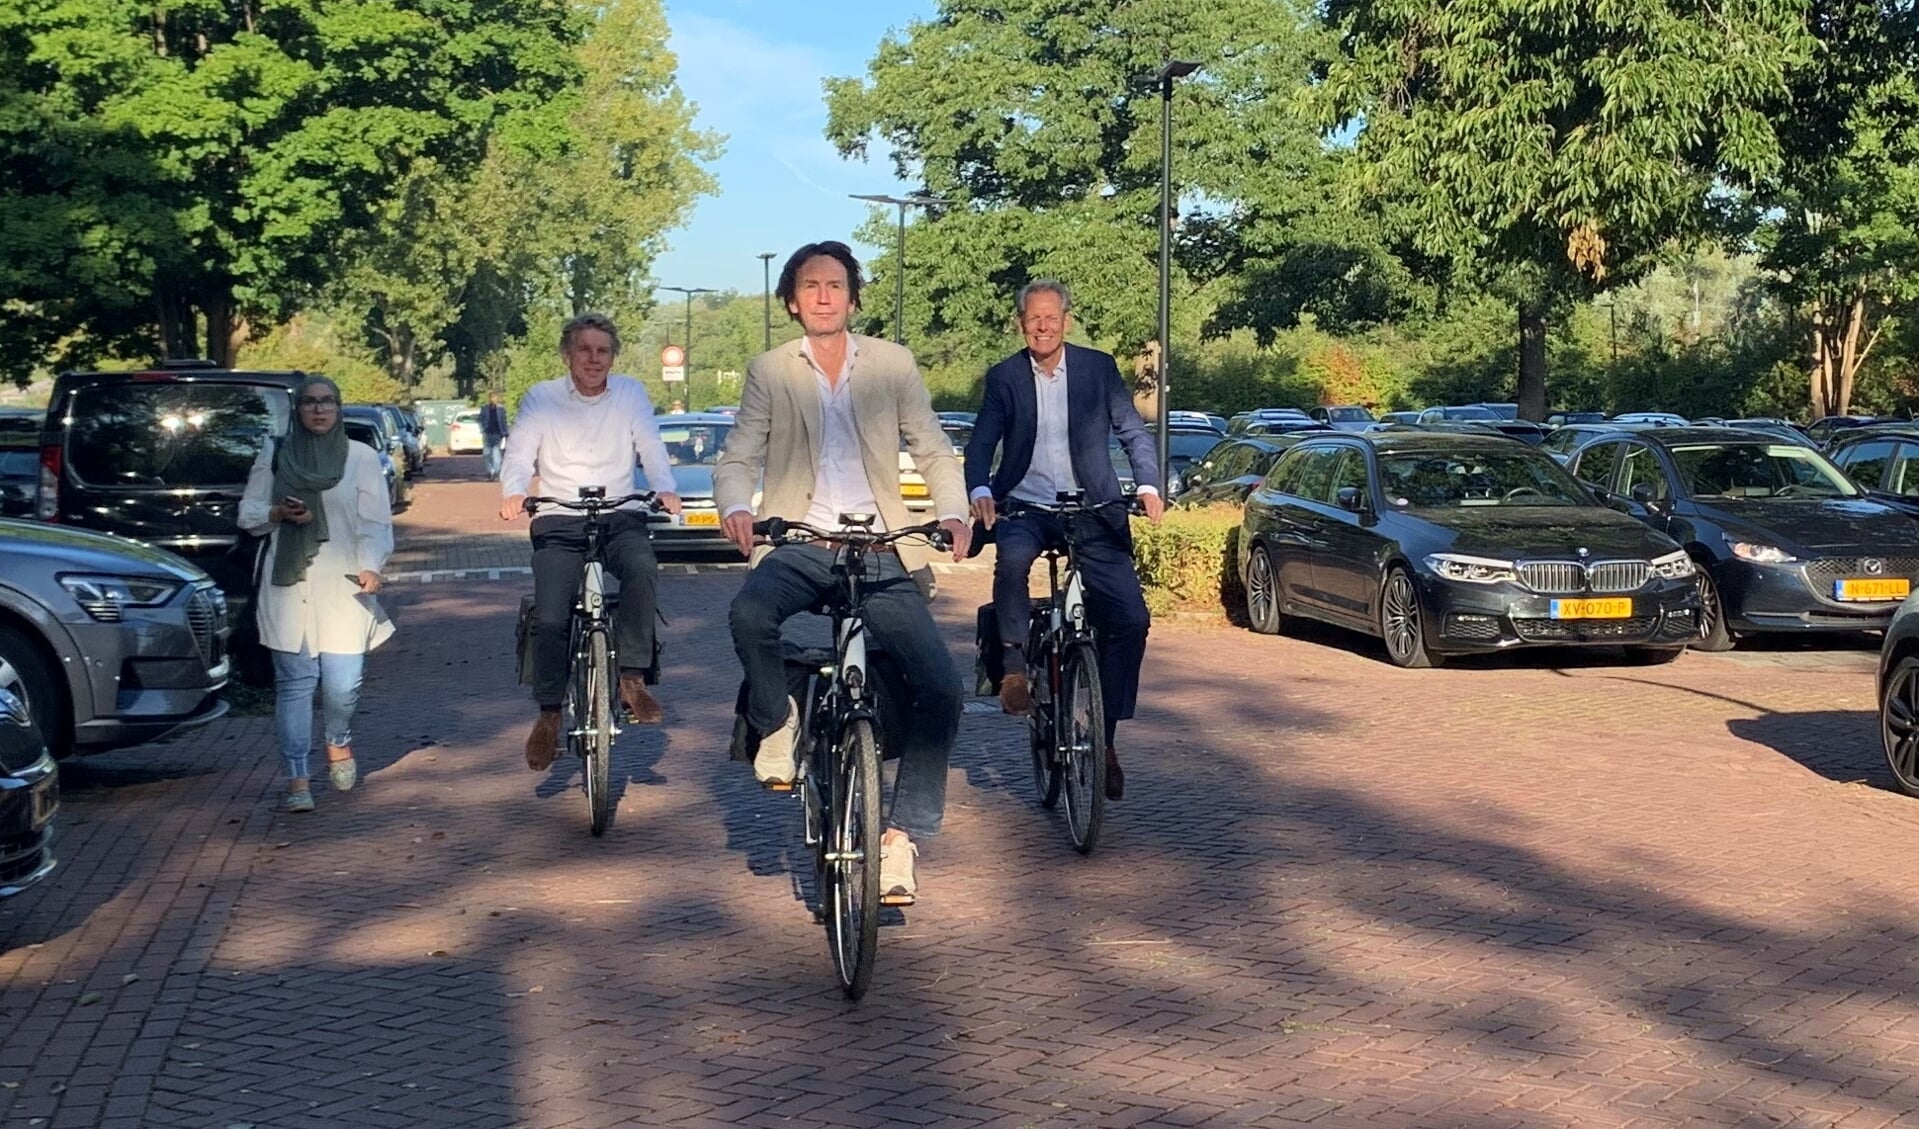 Wethouder Herbert Raat en gemeentesecretaris Bert Winthorst nemen de elektrische fietsen in gebruik.